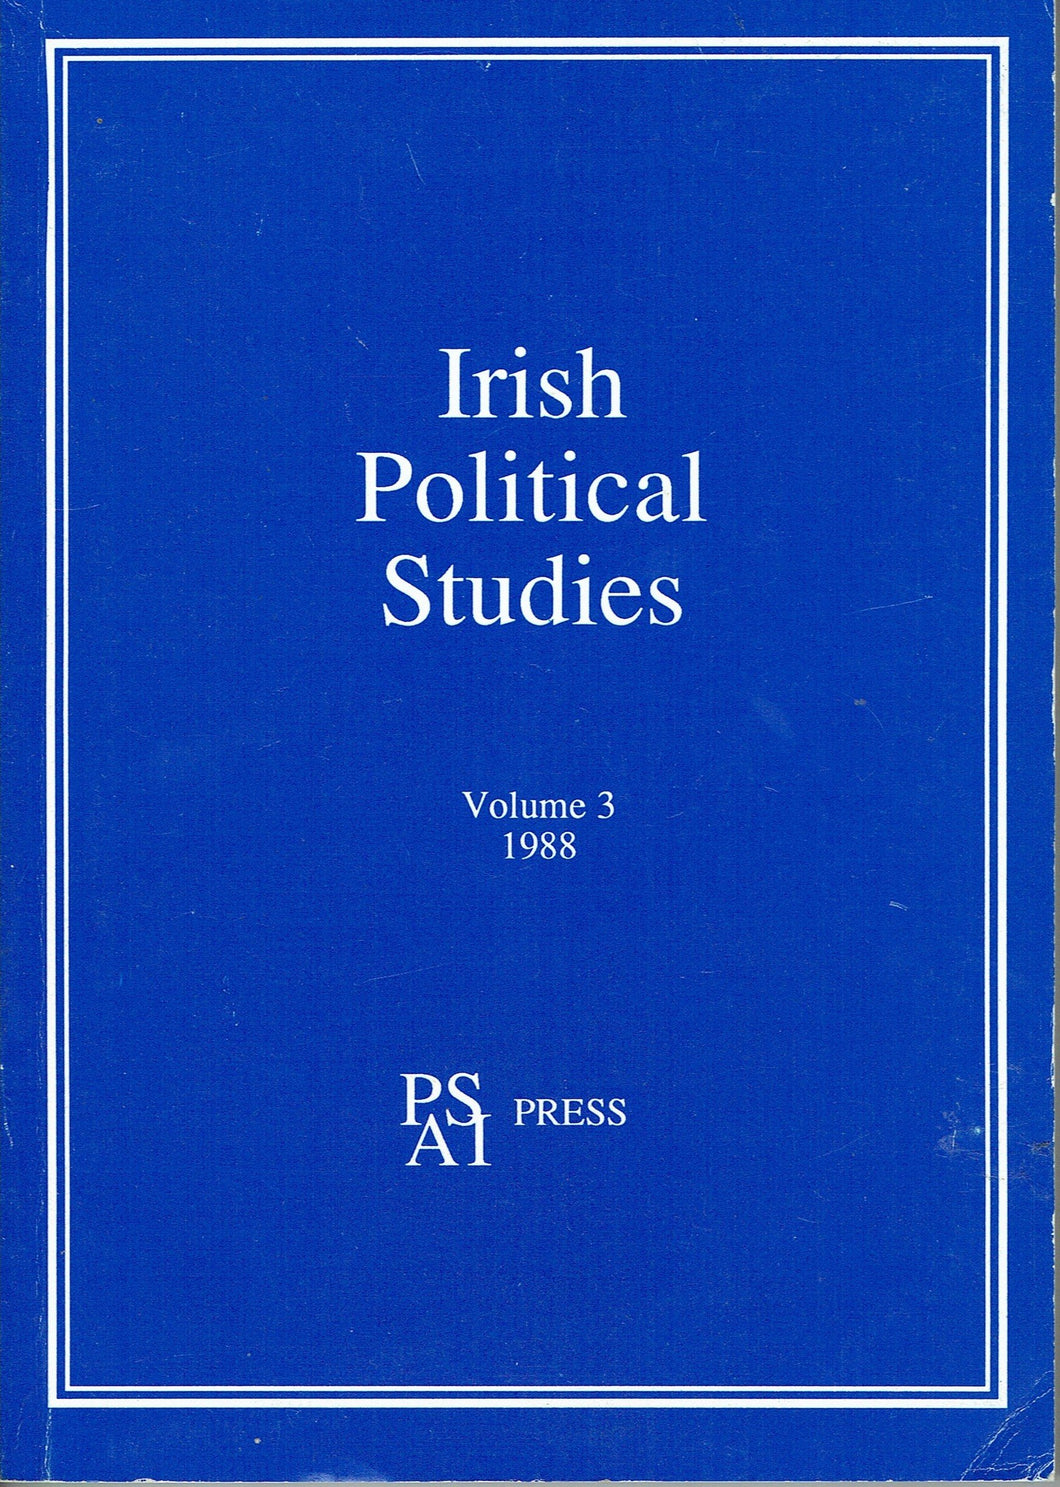 Irish Political Studies - Volume 3, 1988